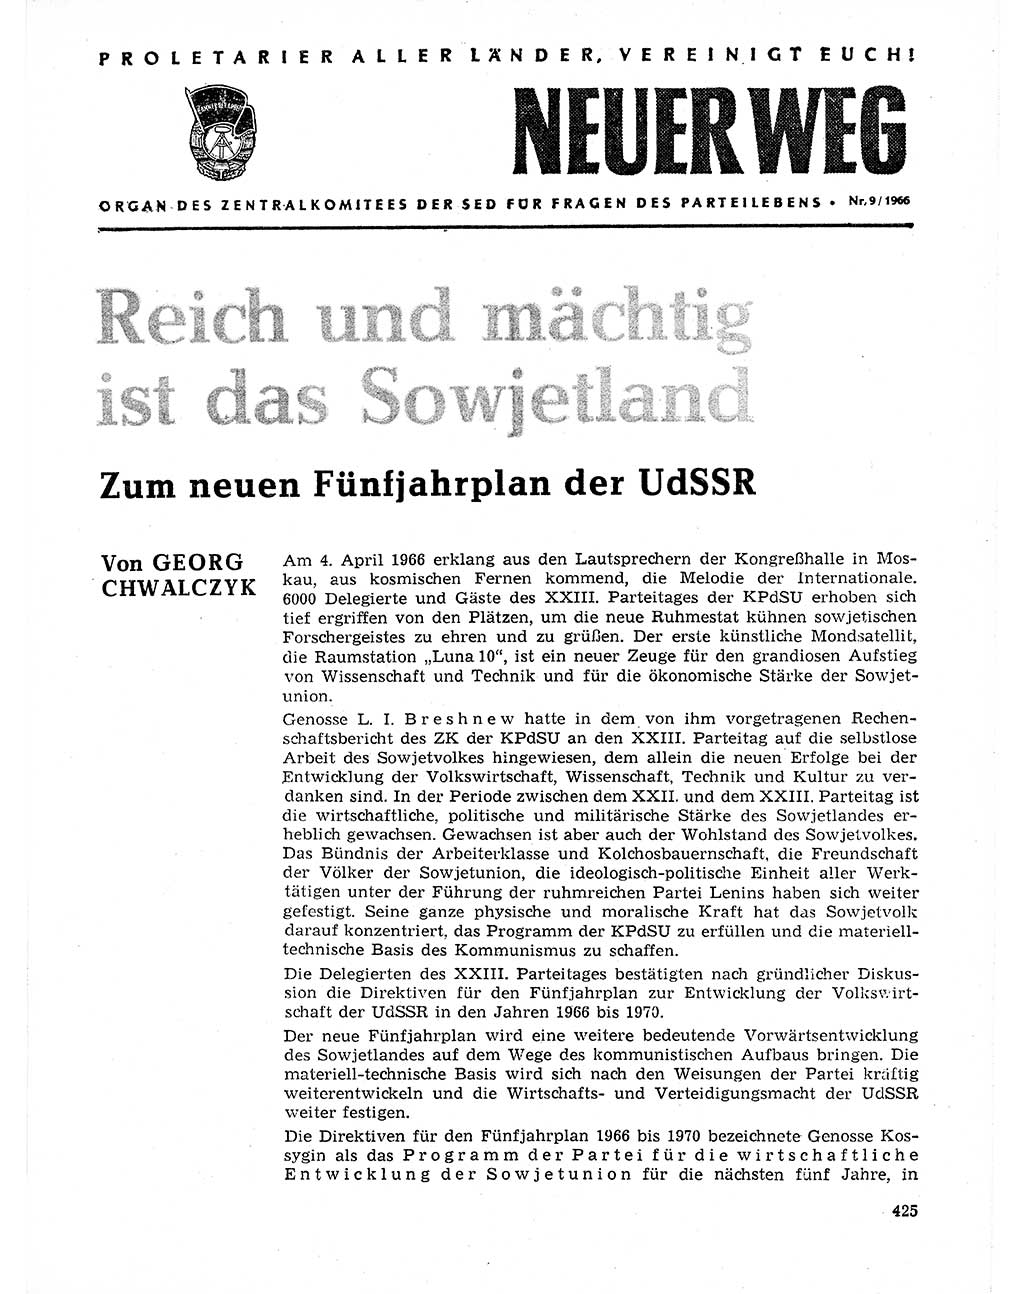 Neuer Weg (NW), Organ des Zentralkomitees (ZK) der SED (Sozialistische Einheitspartei Deutschlands) für Fragen des Parteilebens, 21. Jahrgang [Deutsche Demokratische Republik (DDR)] 1966, Seite 425 (NW ZK SED DDR 1966, S. 425)